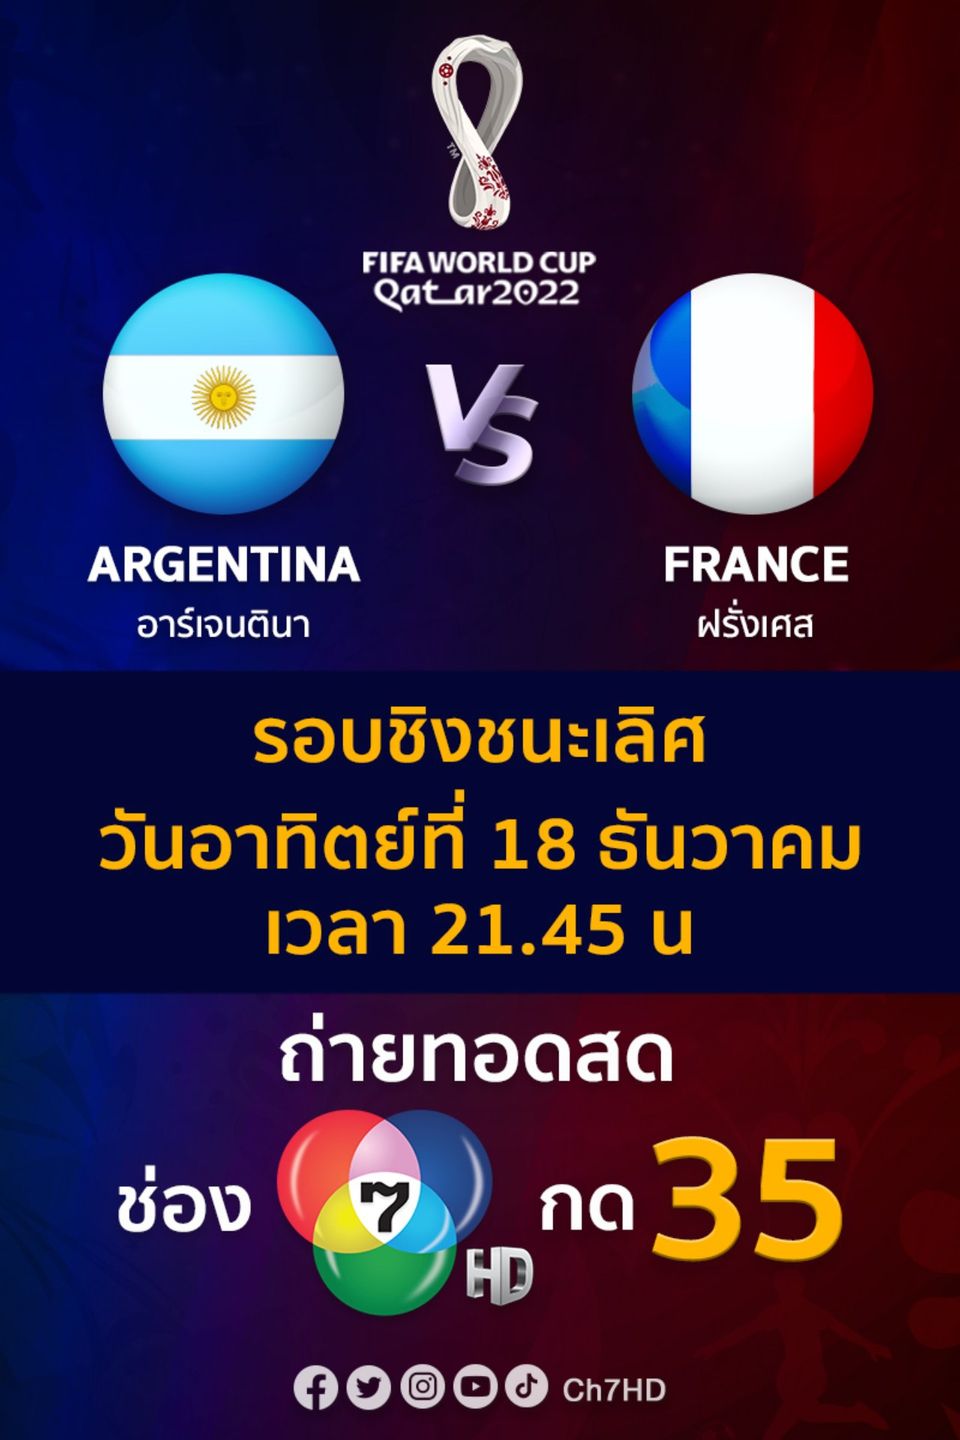 ช่อง 7HD ชวนคอบอลเชียร์นัดหยุดโลก ยิงสดรอบชิง ฟุตบอลโลก 2022   ฝรั่งเศส VS อาร์เจนติน่า  อาทิตย์ 18 ธ.ค.นี้ ตั้งแต่เวลา 21.45 น. 